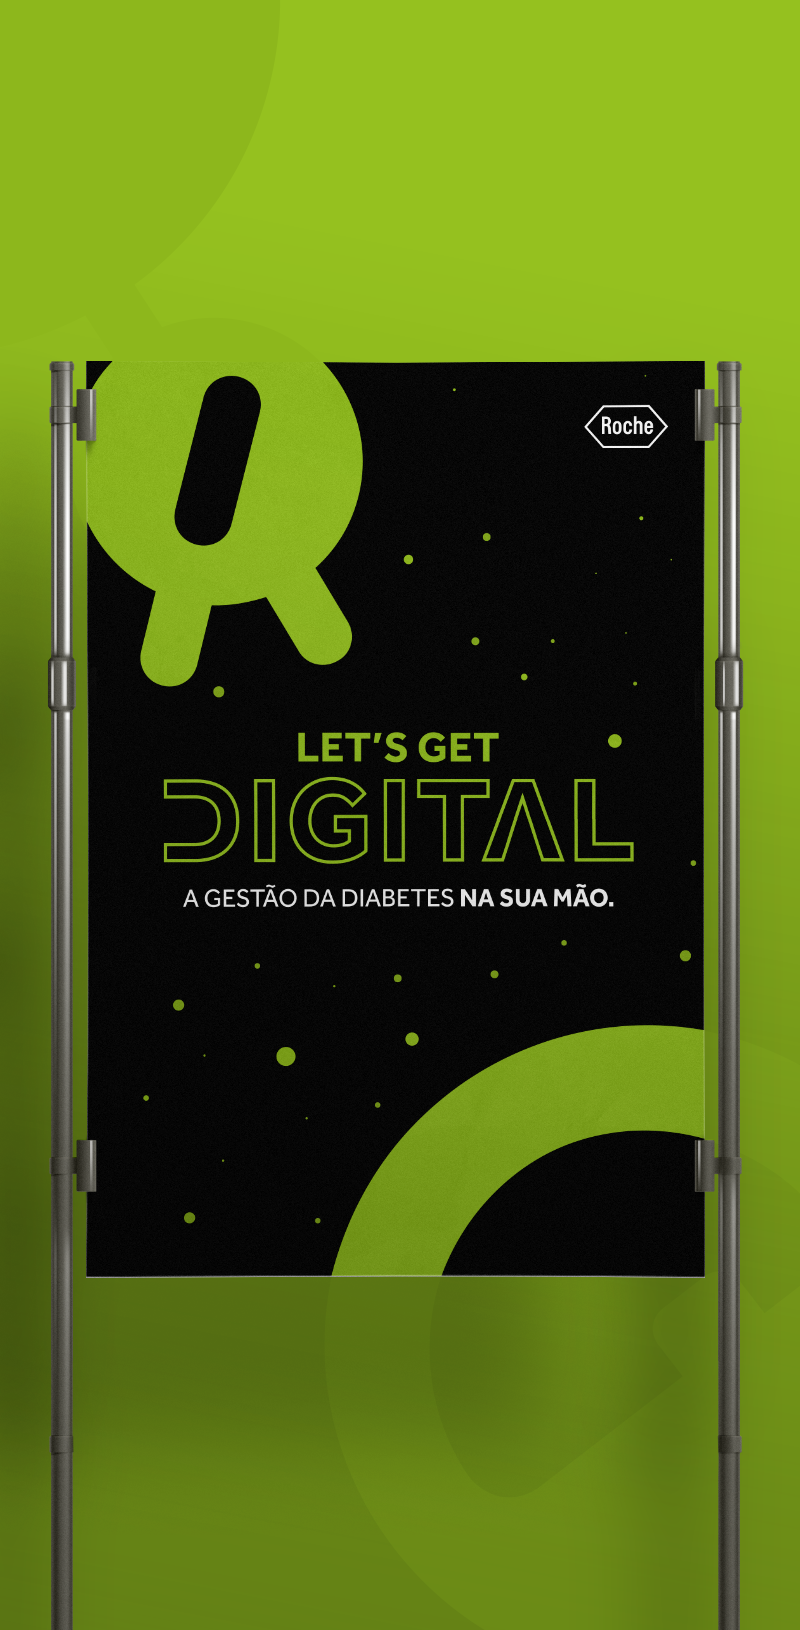 Let’s get digital!